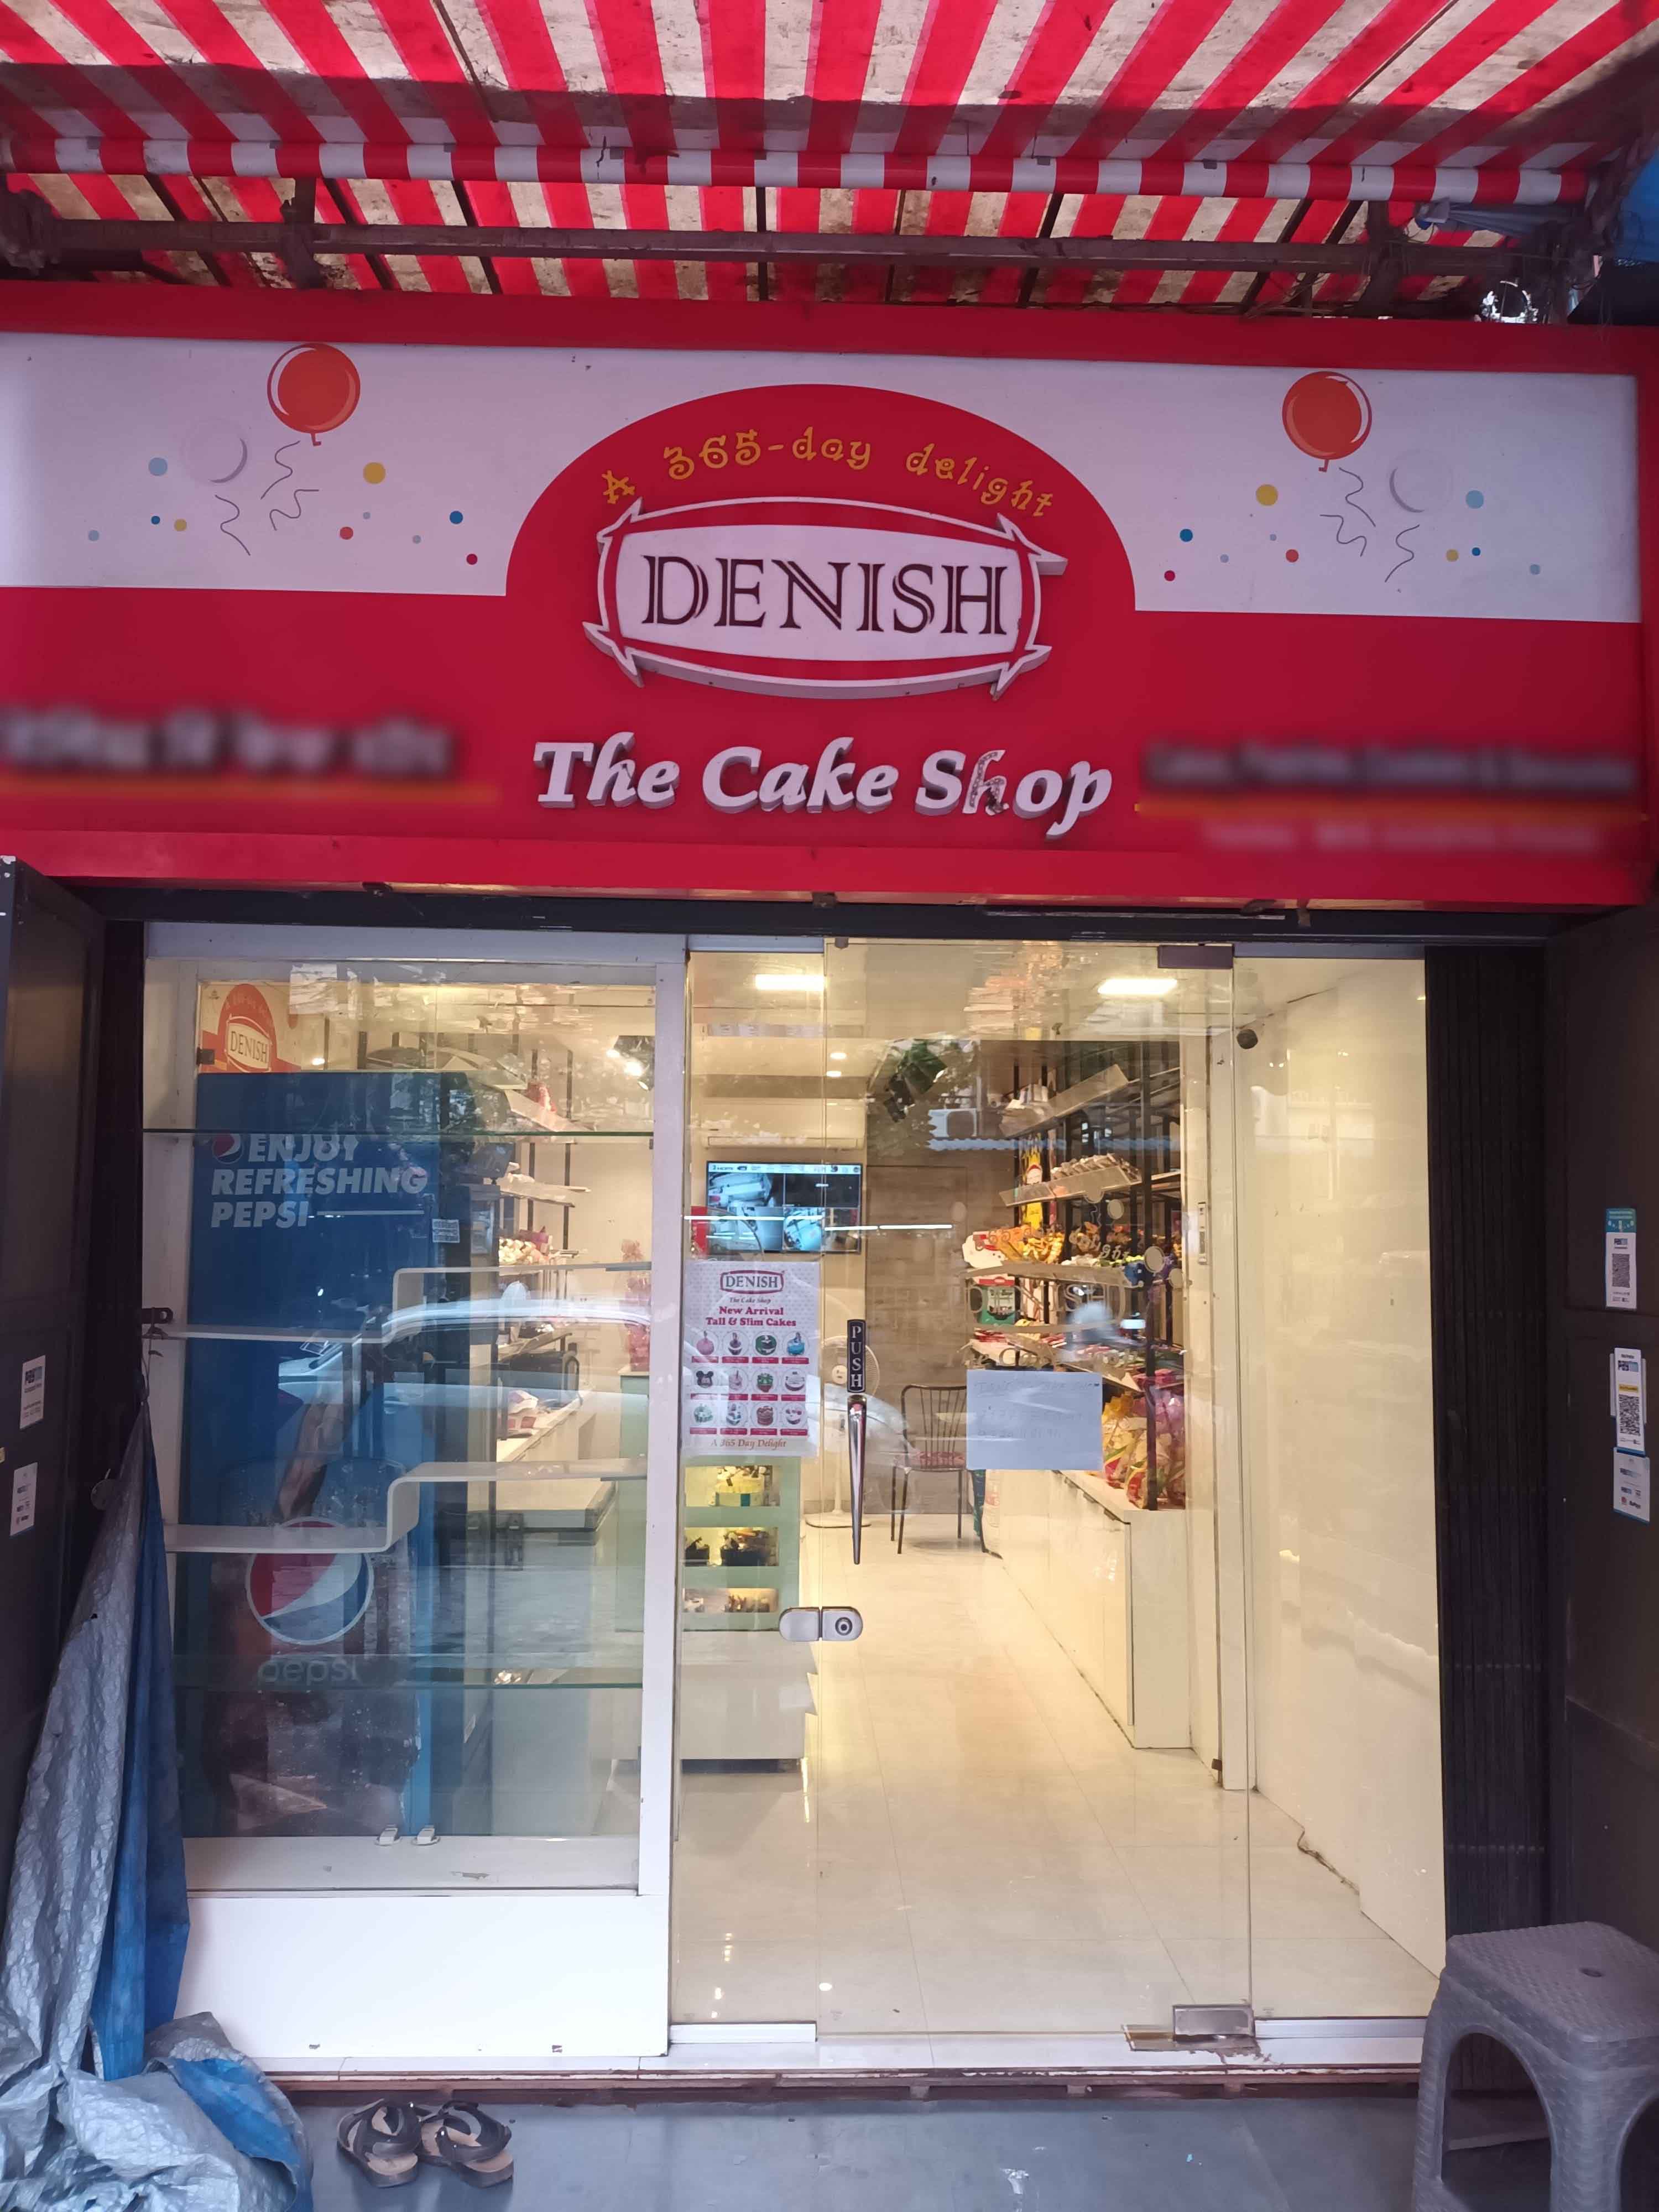 Denish The Cakes Shop @ Shrivardhan